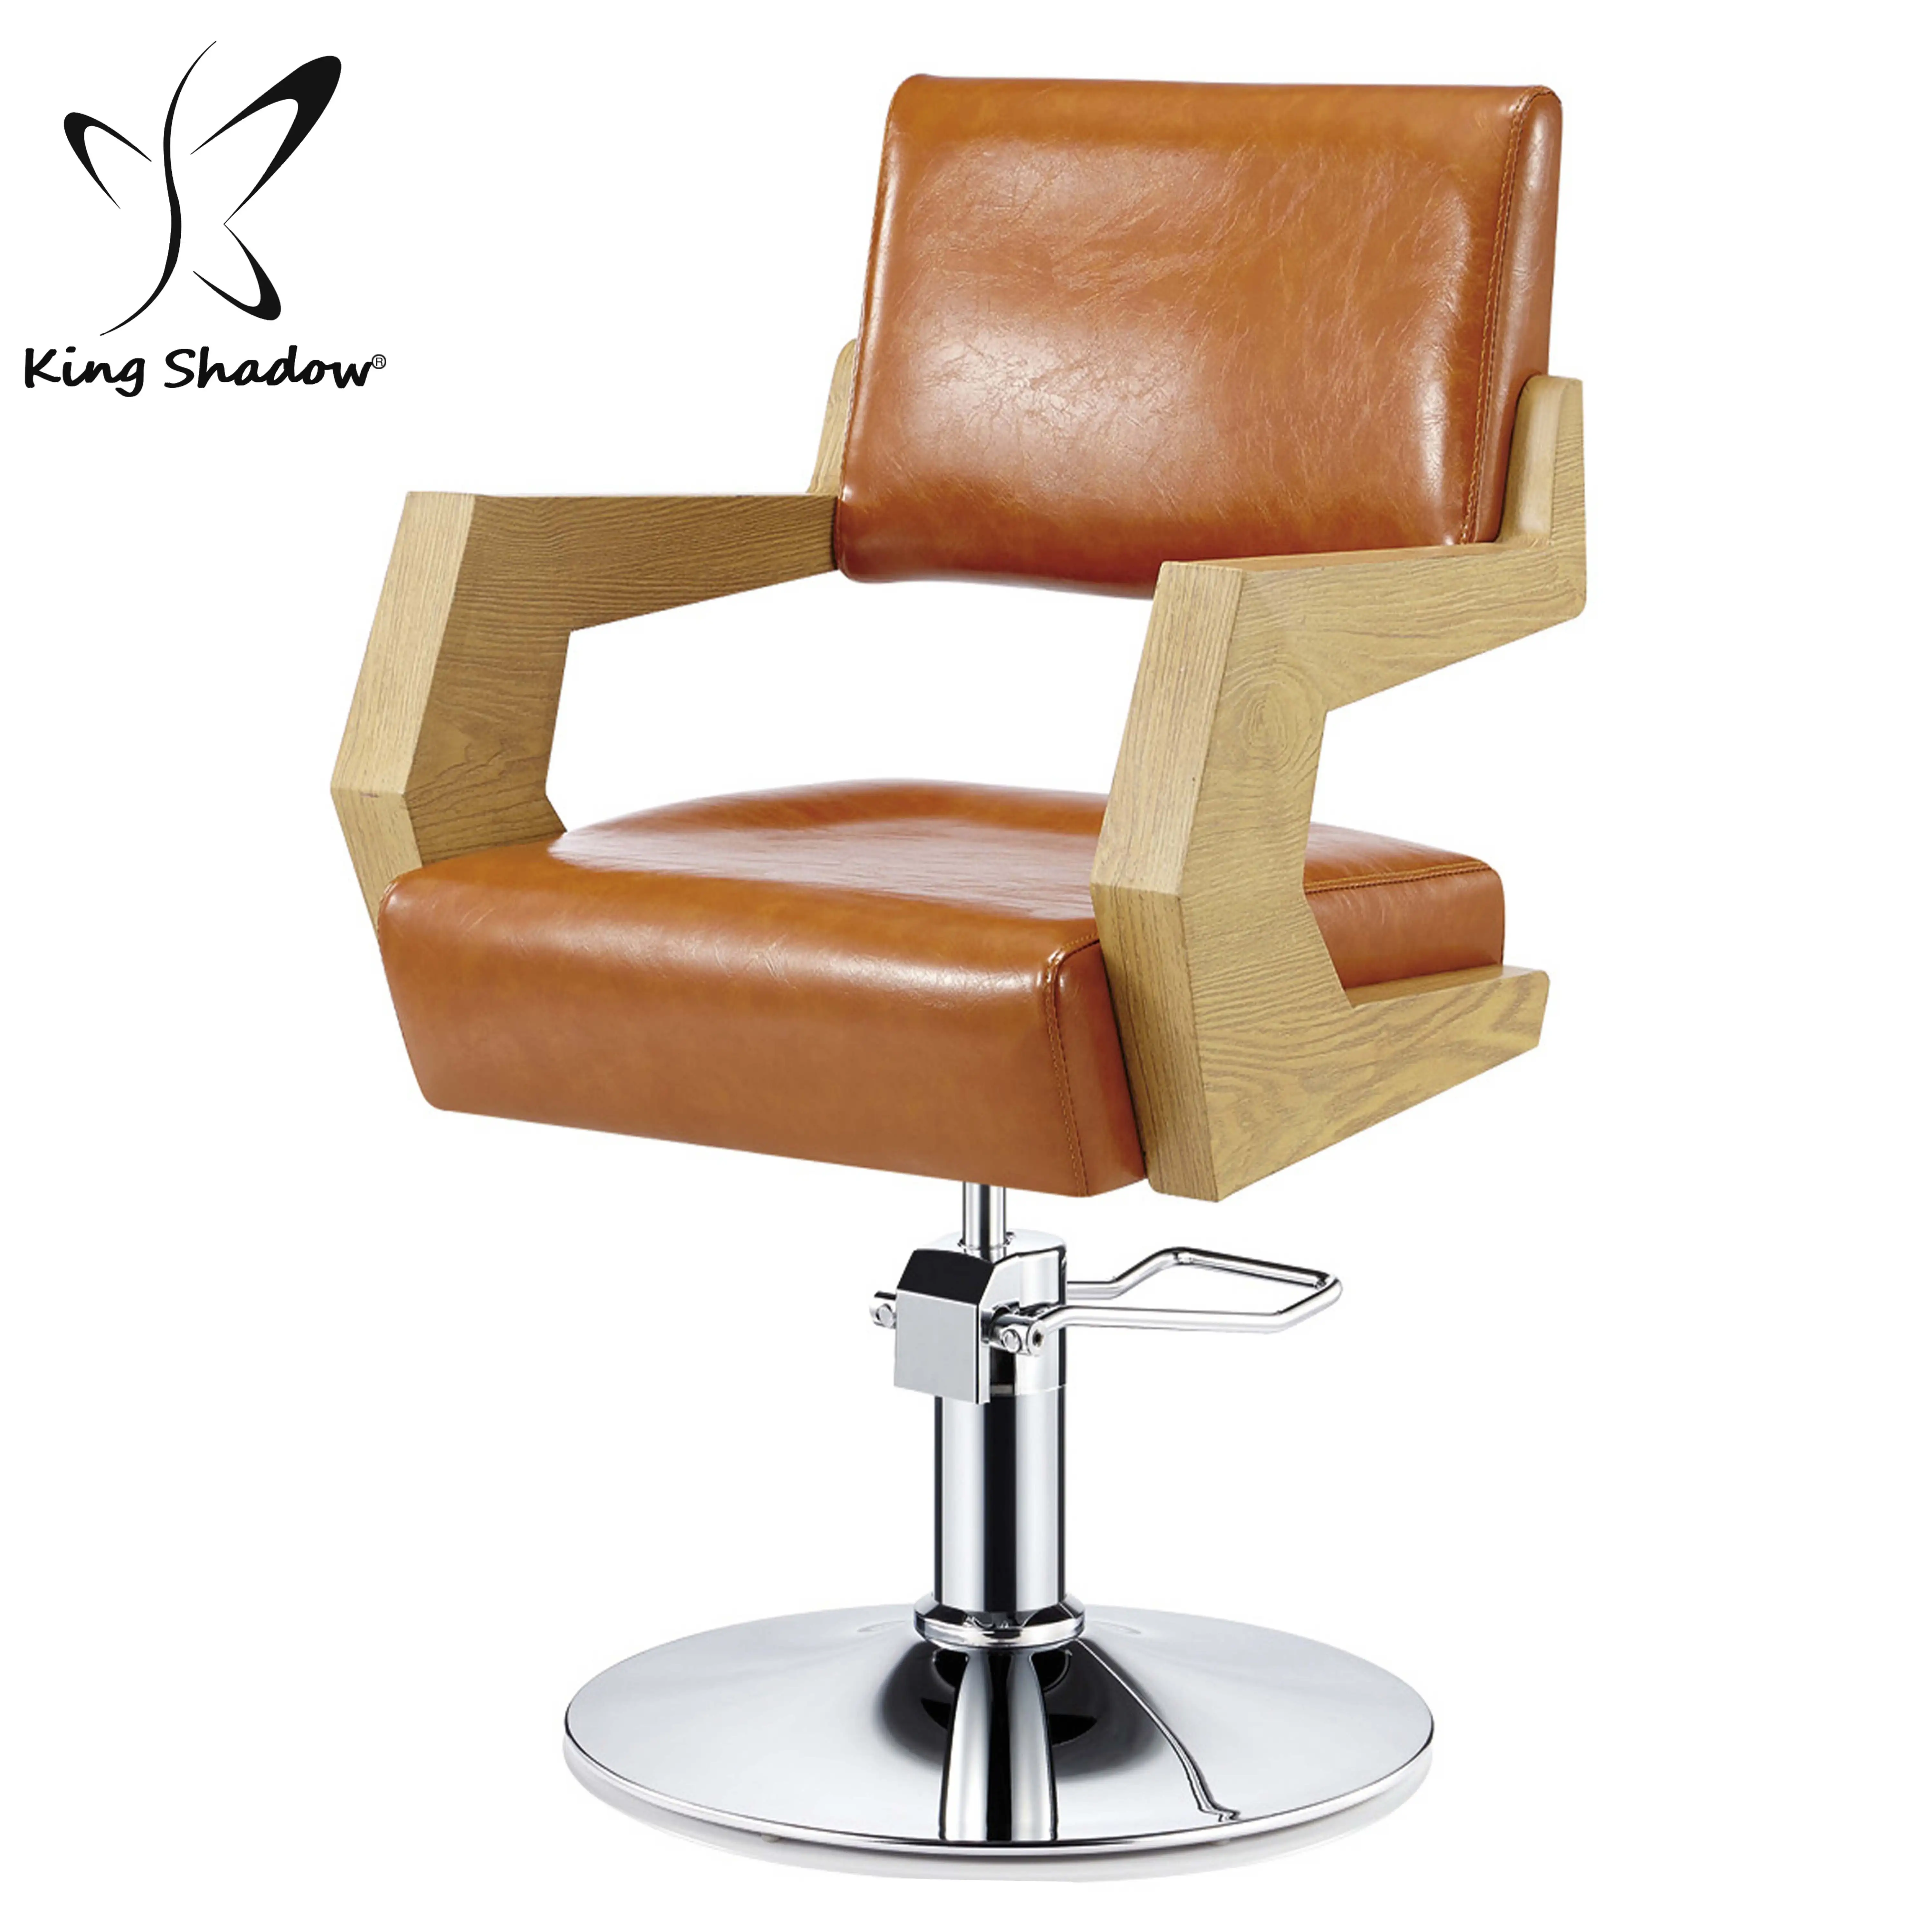 Signore salone di bellezza sedia per hair stylist salon styling sedia per la vendita